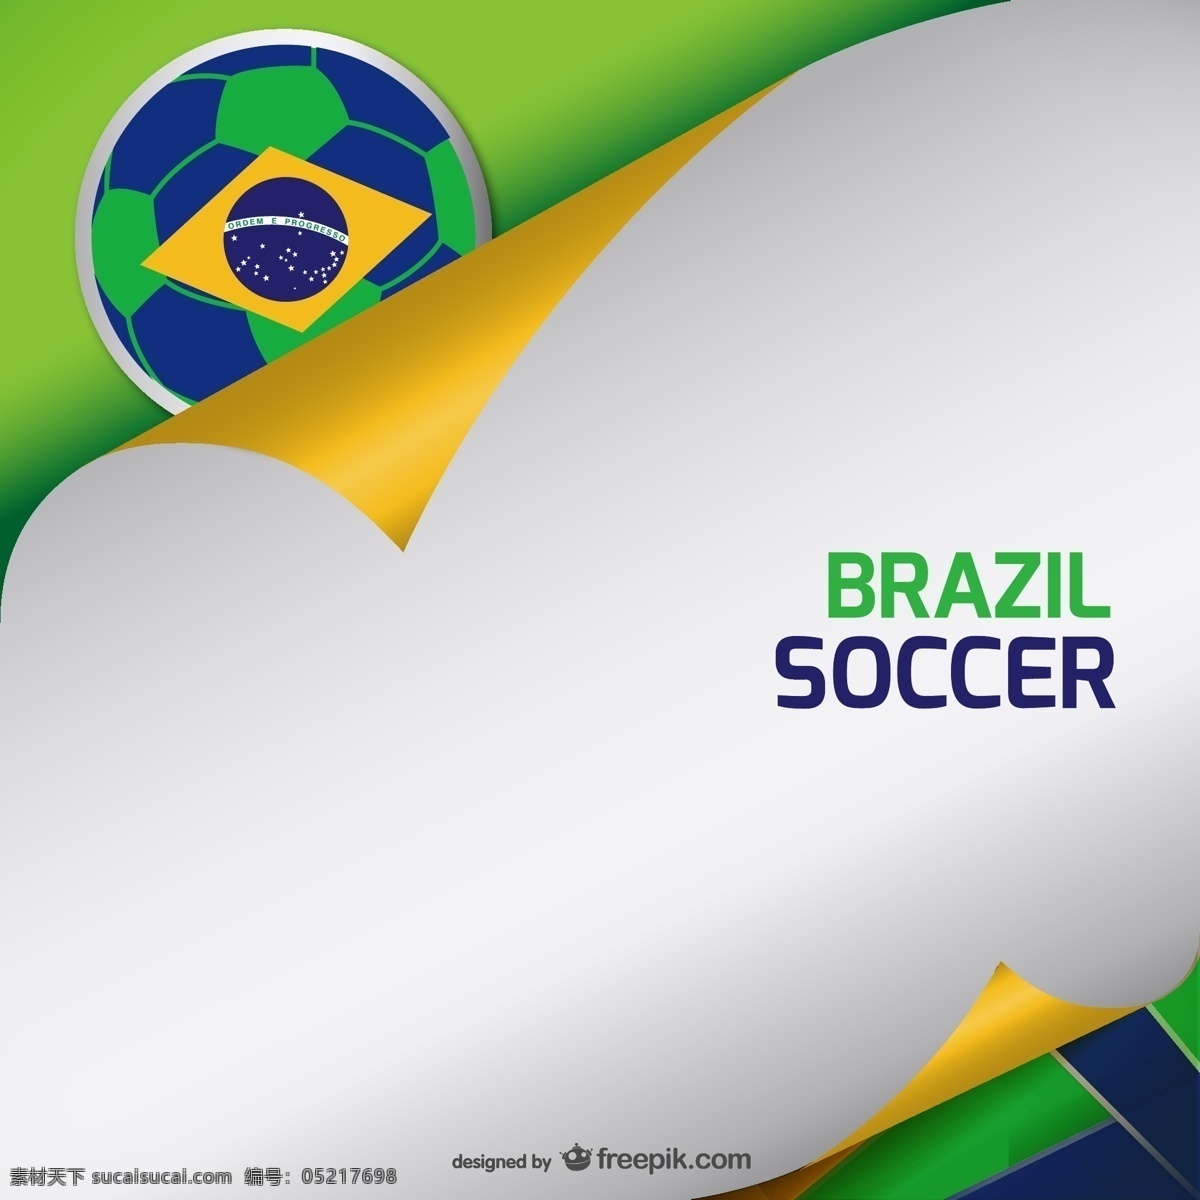 巴西 世界杯 背景 矢量 足球 体育 体育运动 运动 赛事 比赛 卷纸 卷边 纸 纸张 插画 海报 画册 文化艺术